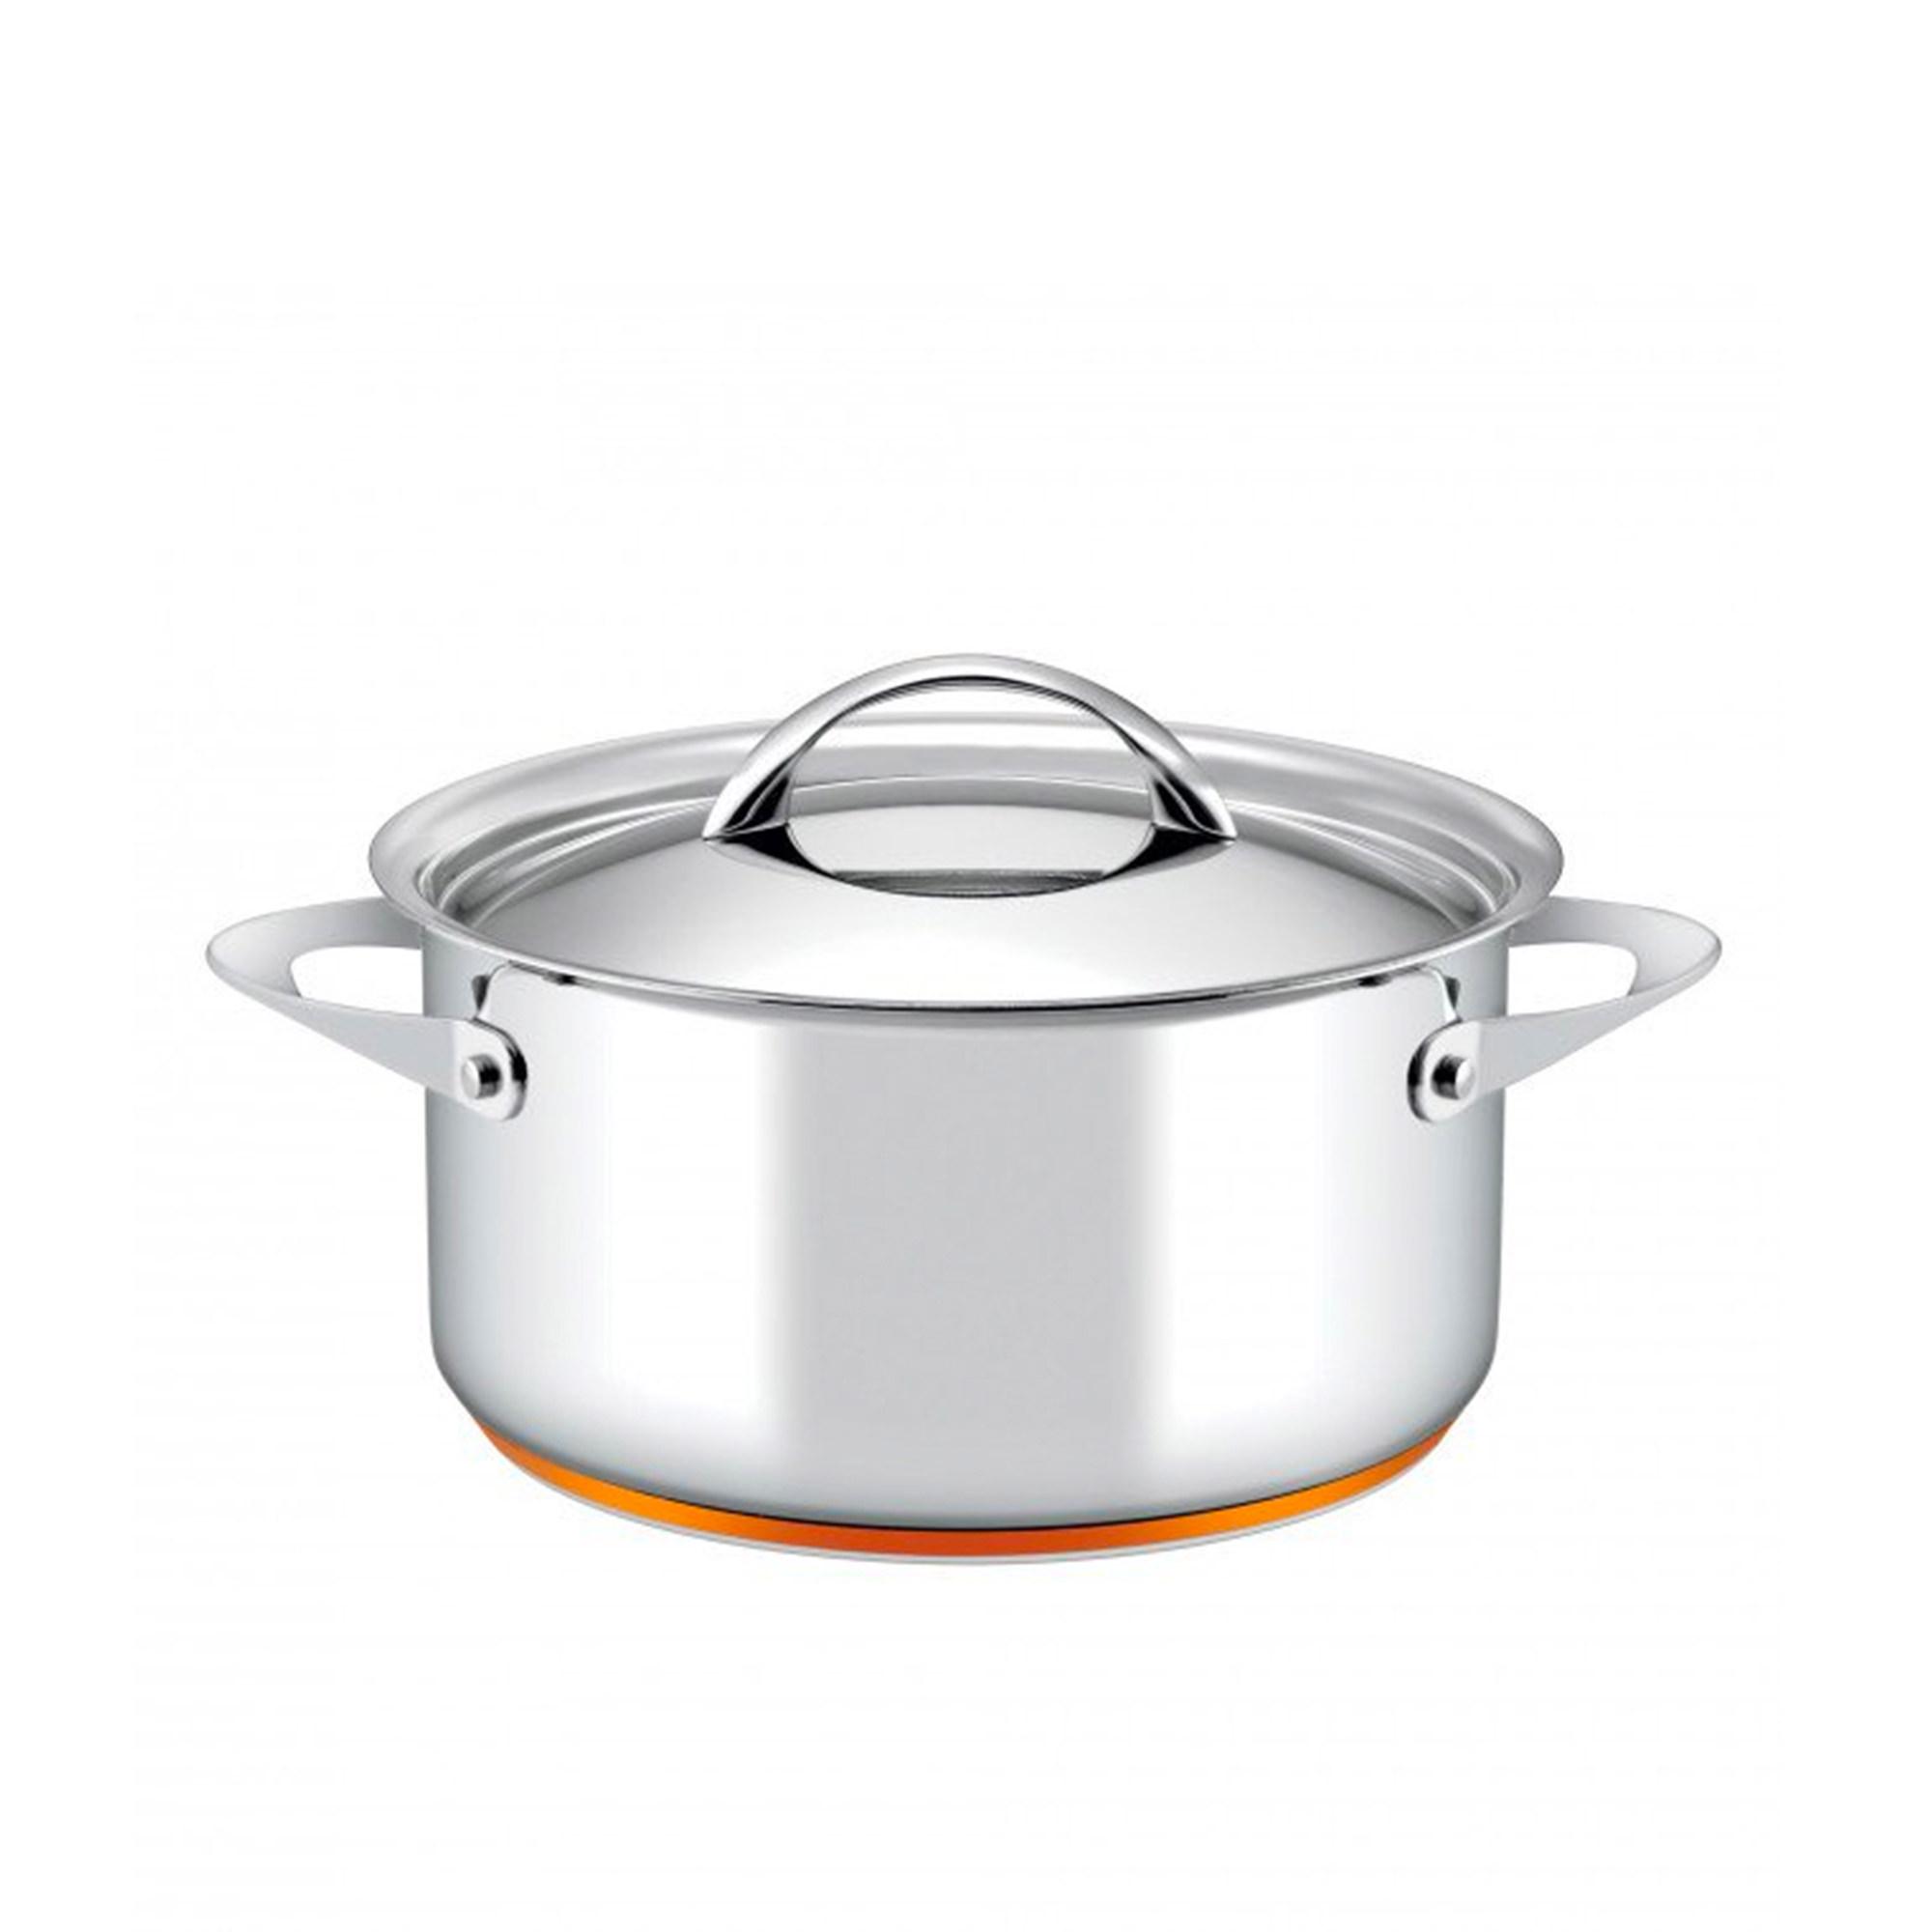 Essteele Per Vita 4pc Stainless Steel Cookware Set Image 4